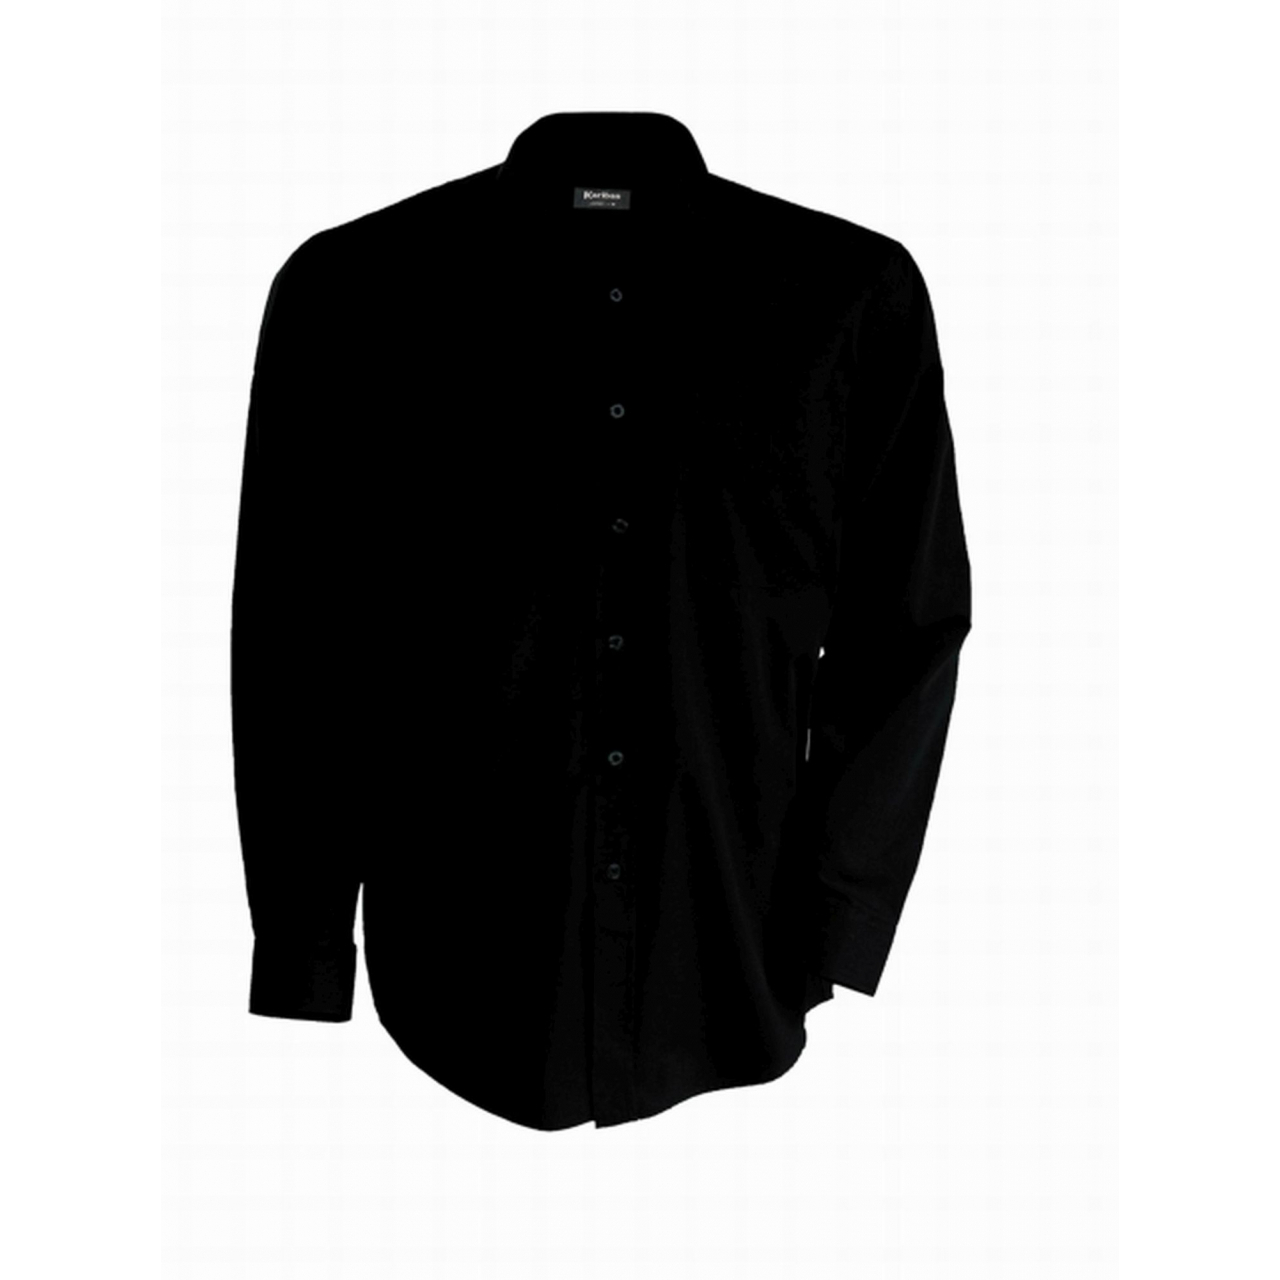 Pánská košile Kariban dlouhý rukáv v nežehlivé úpravě - černá, XL